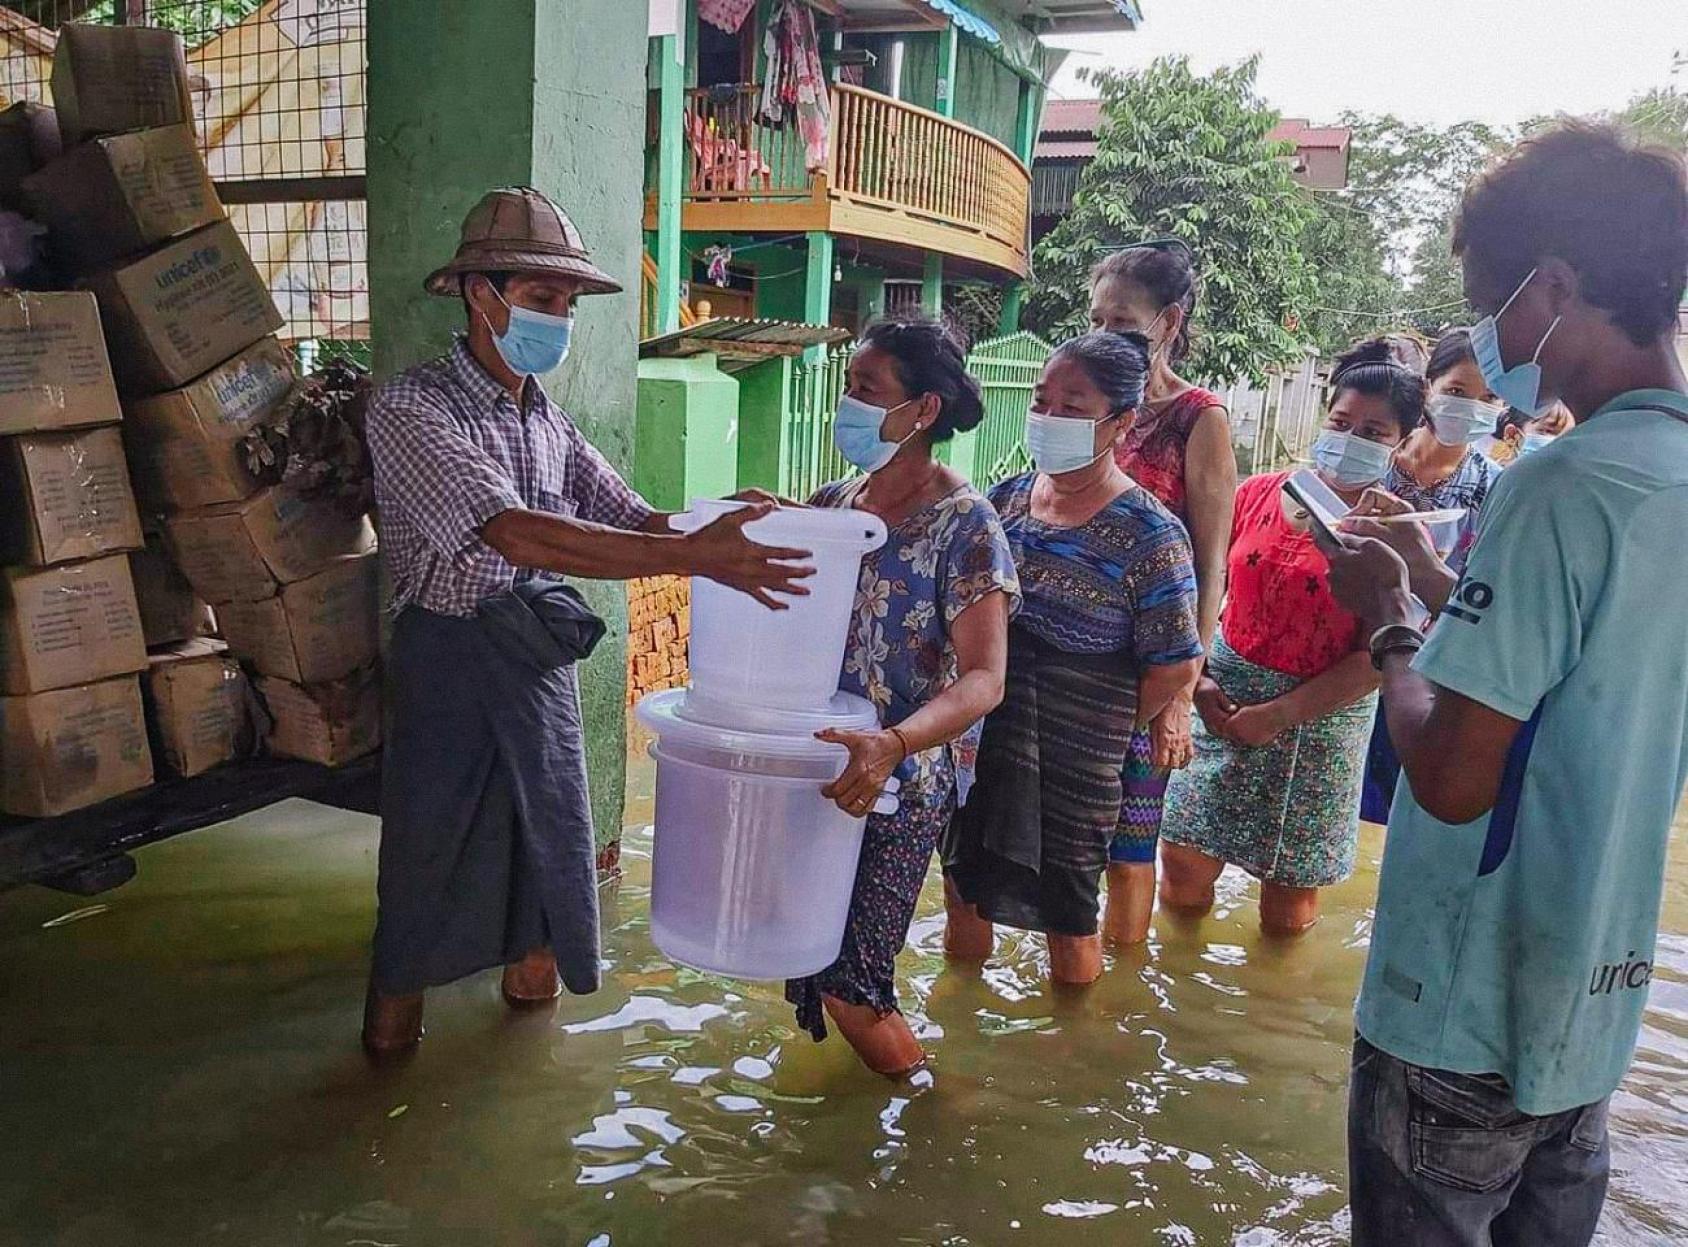 أشخاص يتلقون المساعدات، في حين تغمر المياه أقدامهم.